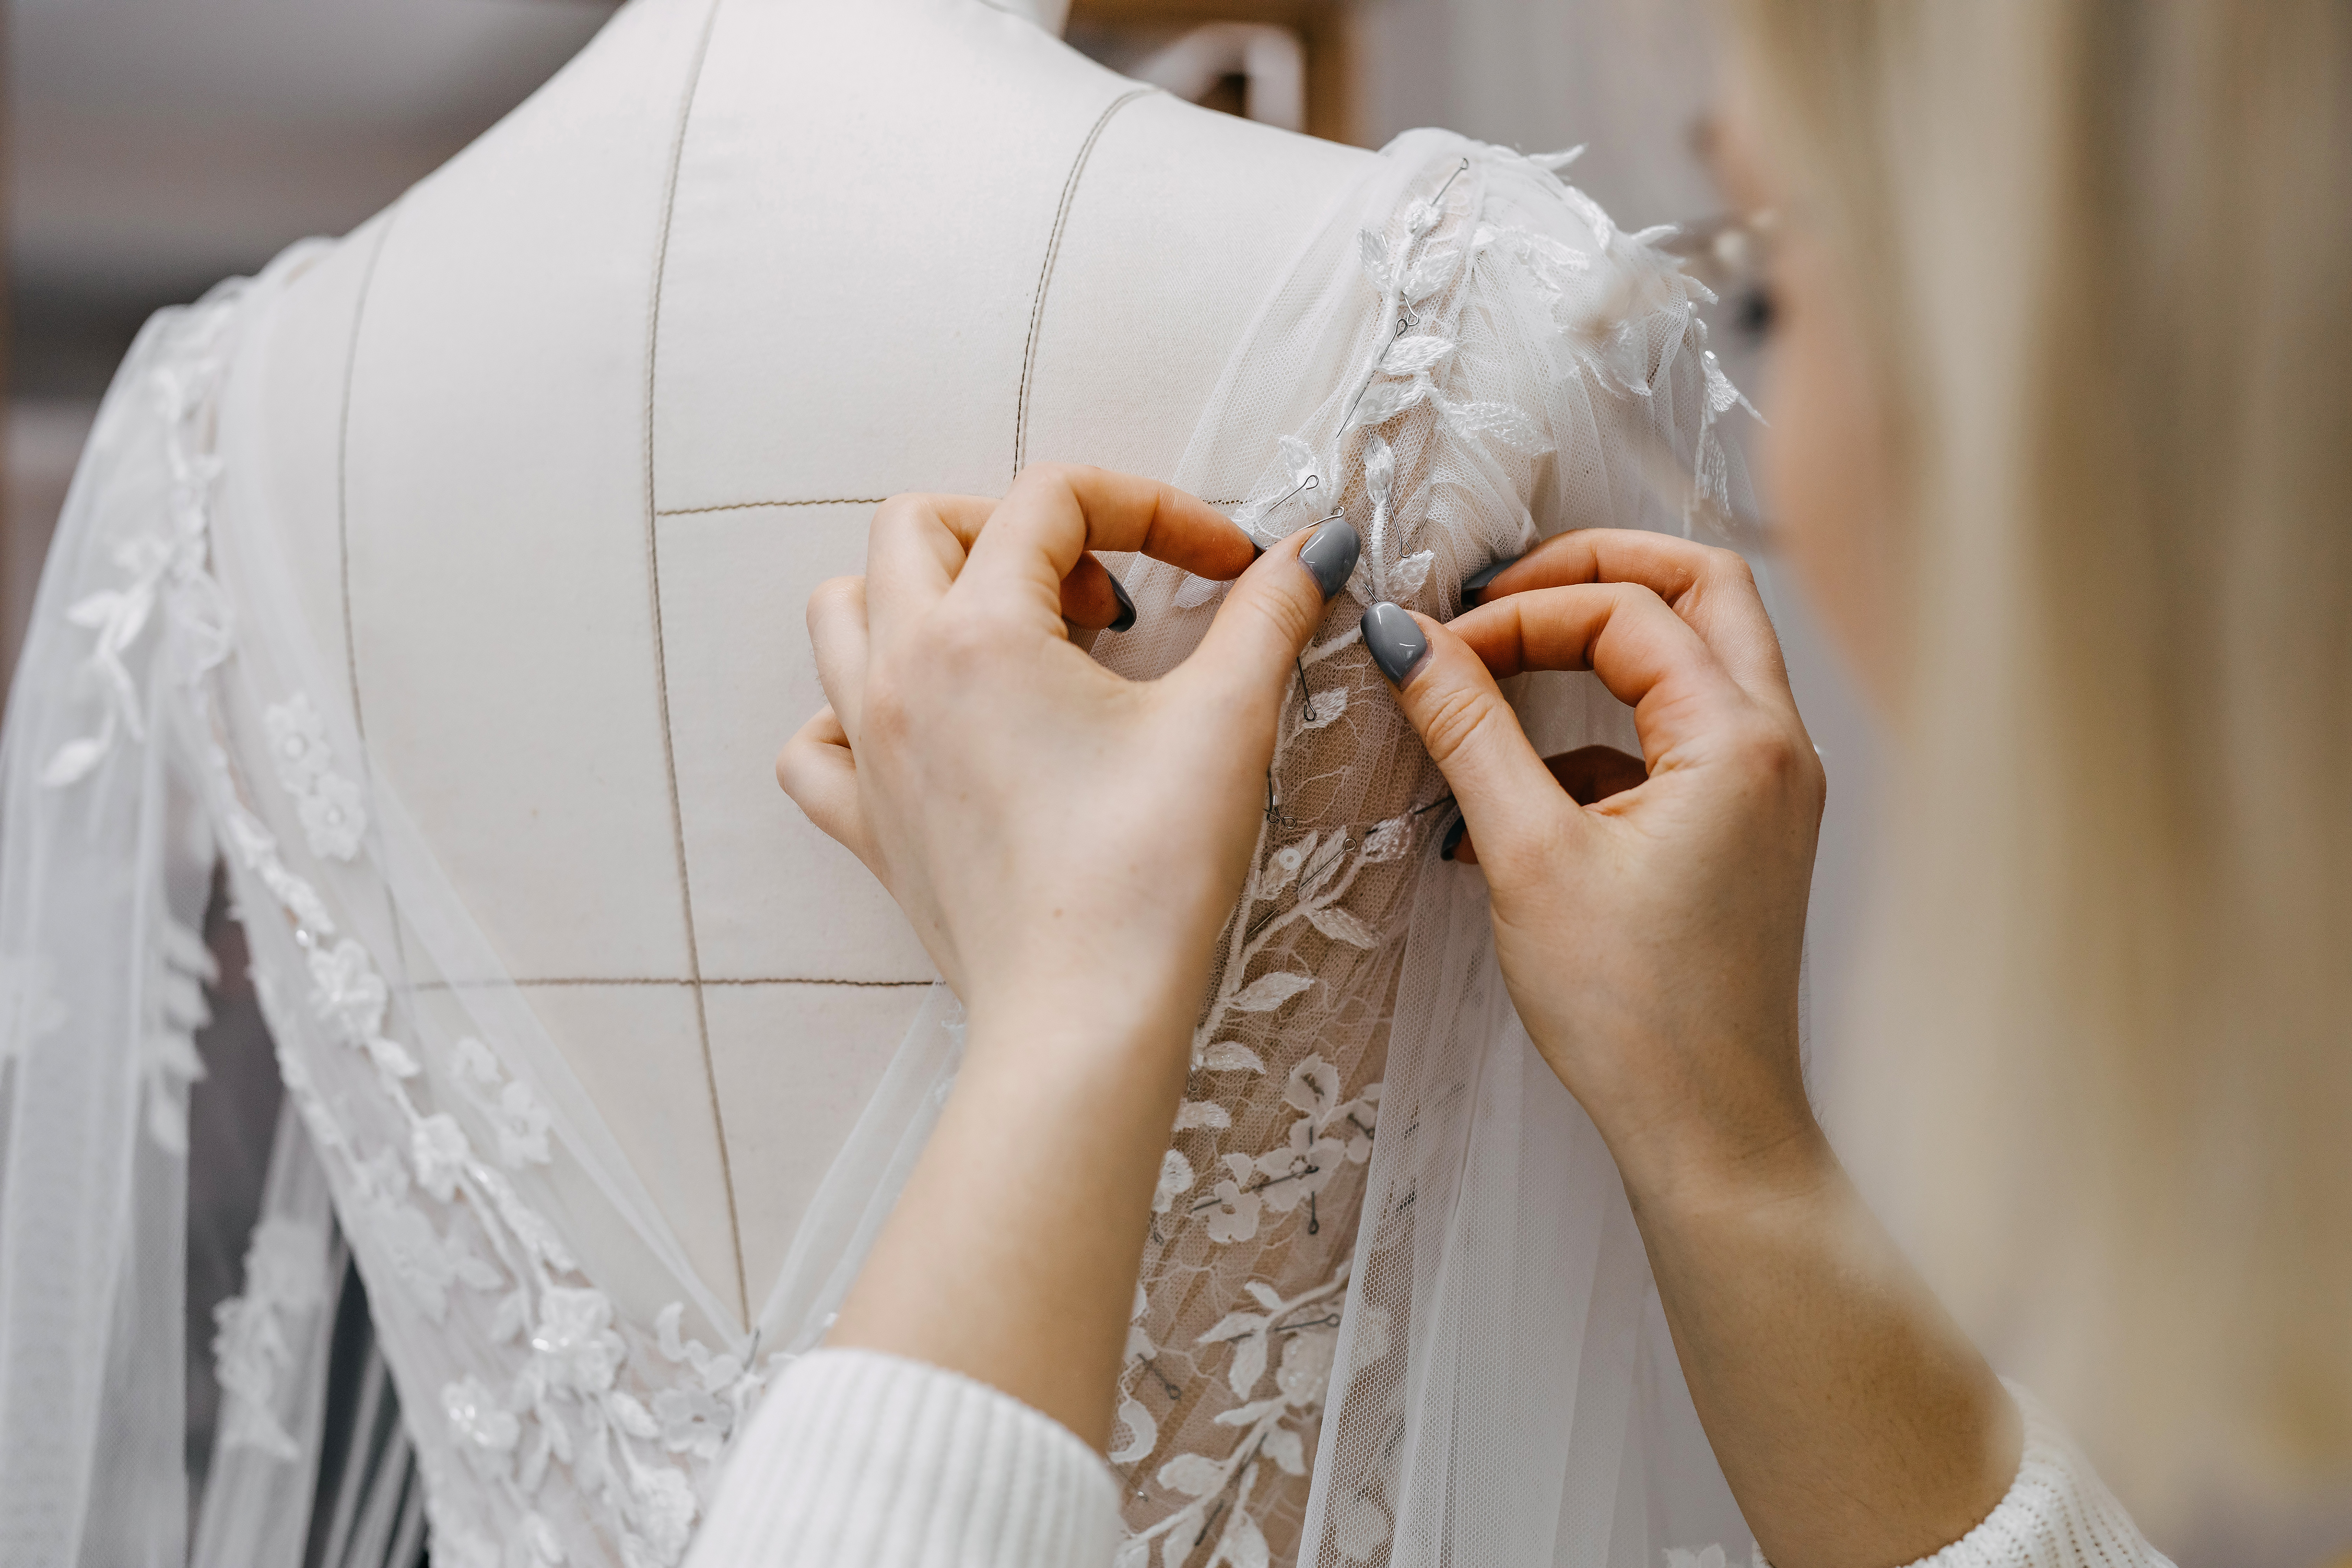 Une femme en train de coudre une robe de mariée | Source : Shutterstock